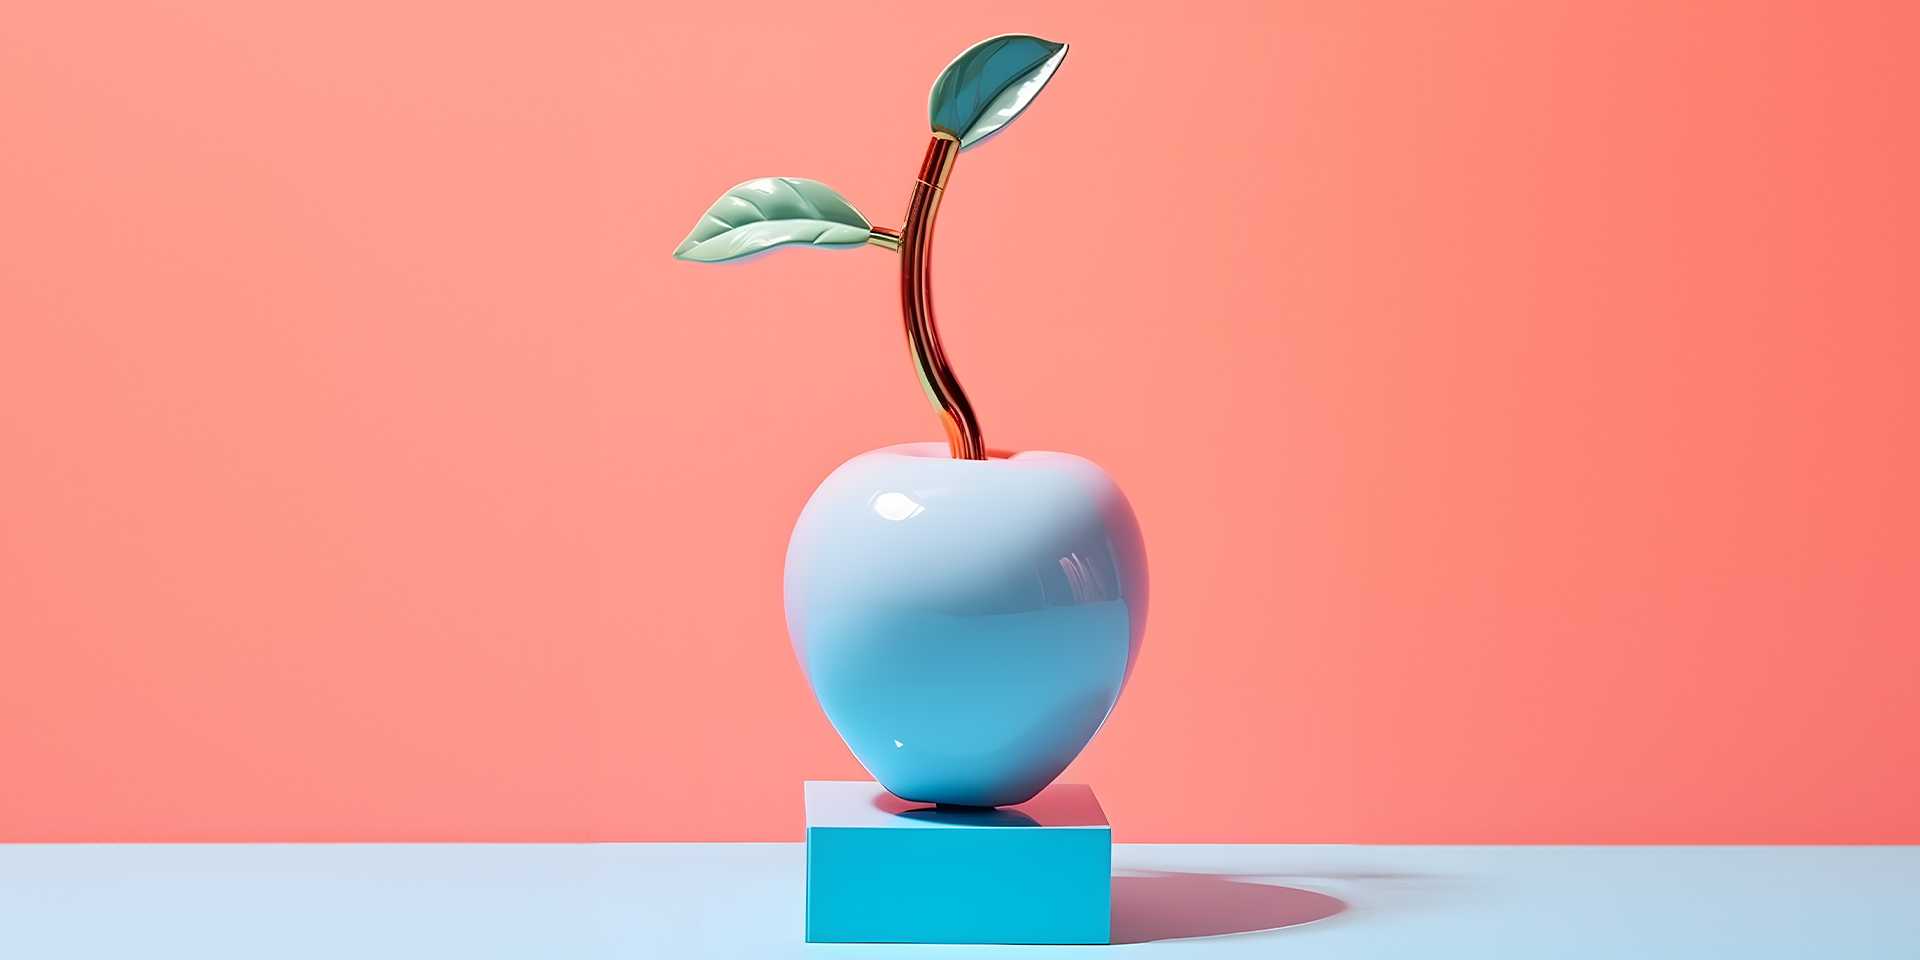 Sculpture of an apple on a small pedestal